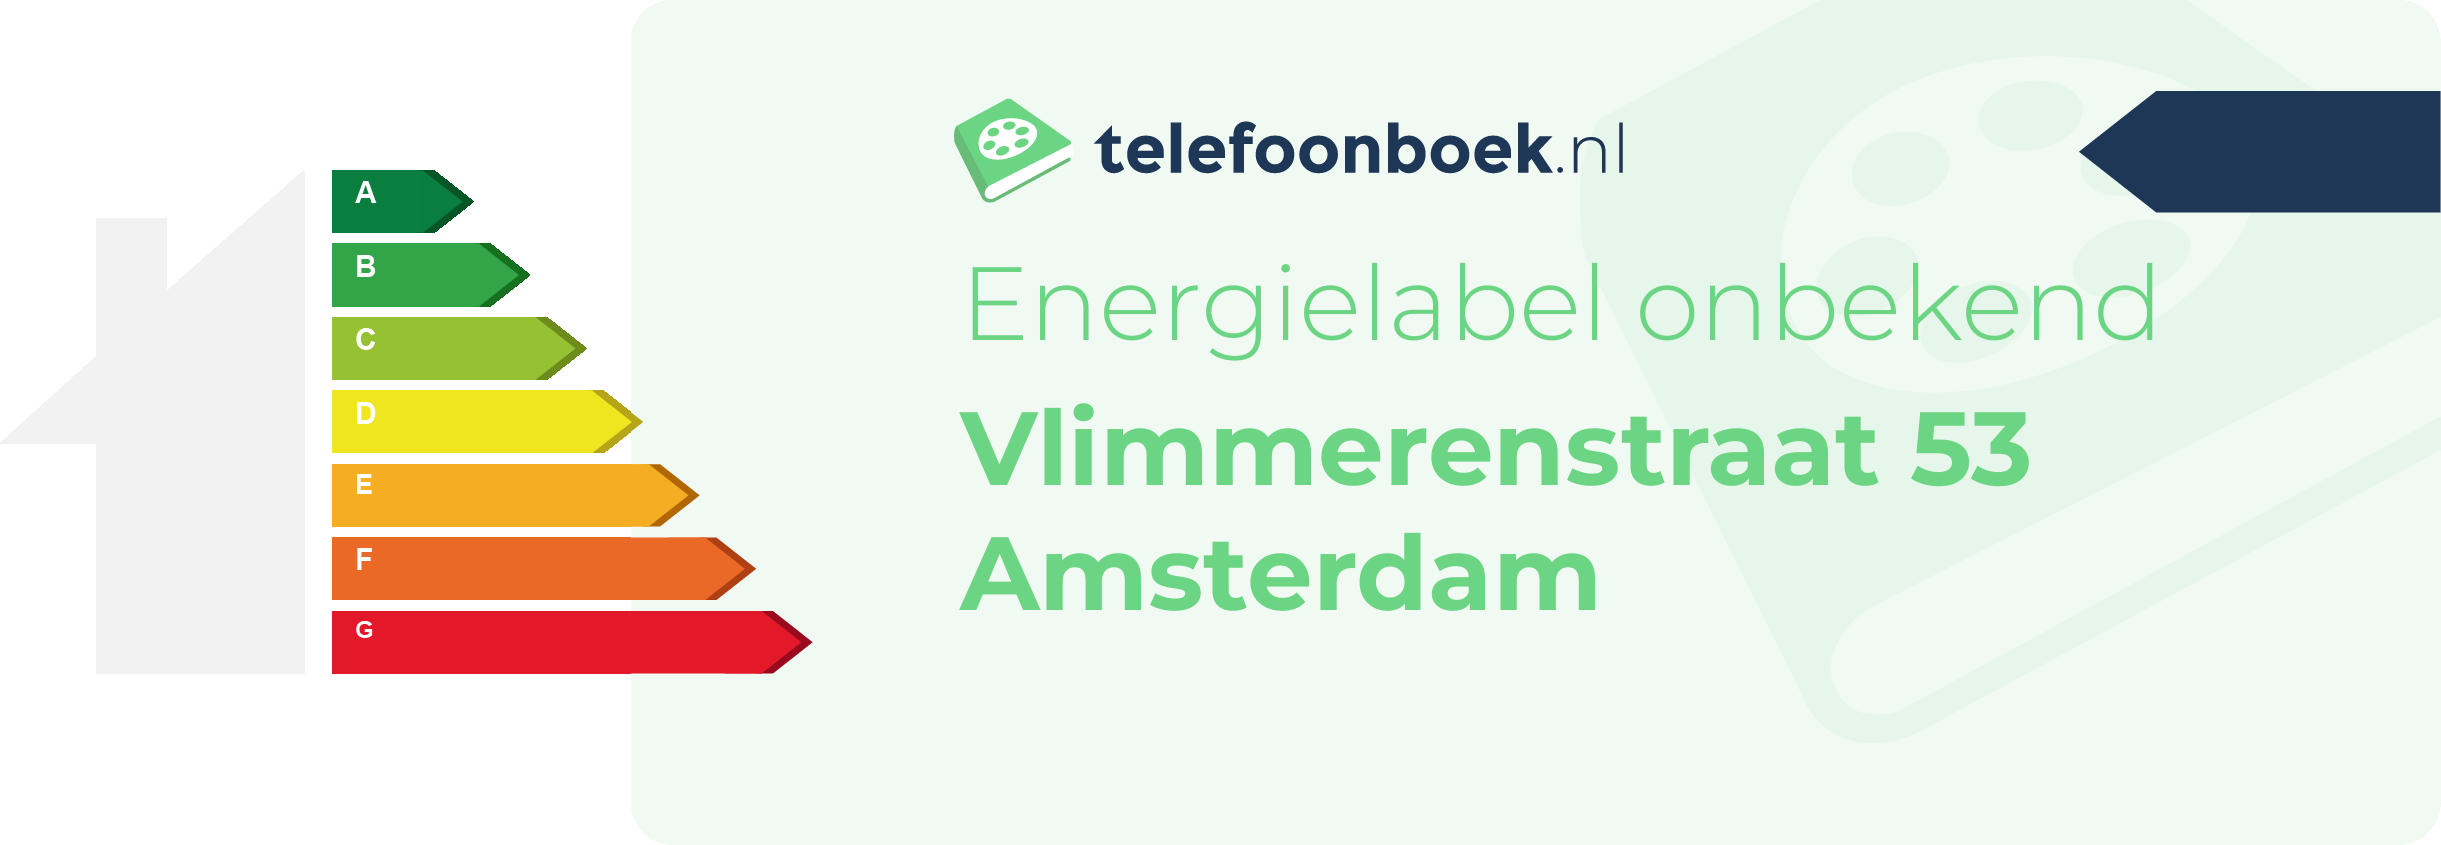 Energielabel Vlimmerenstraat 53 Amsterdam